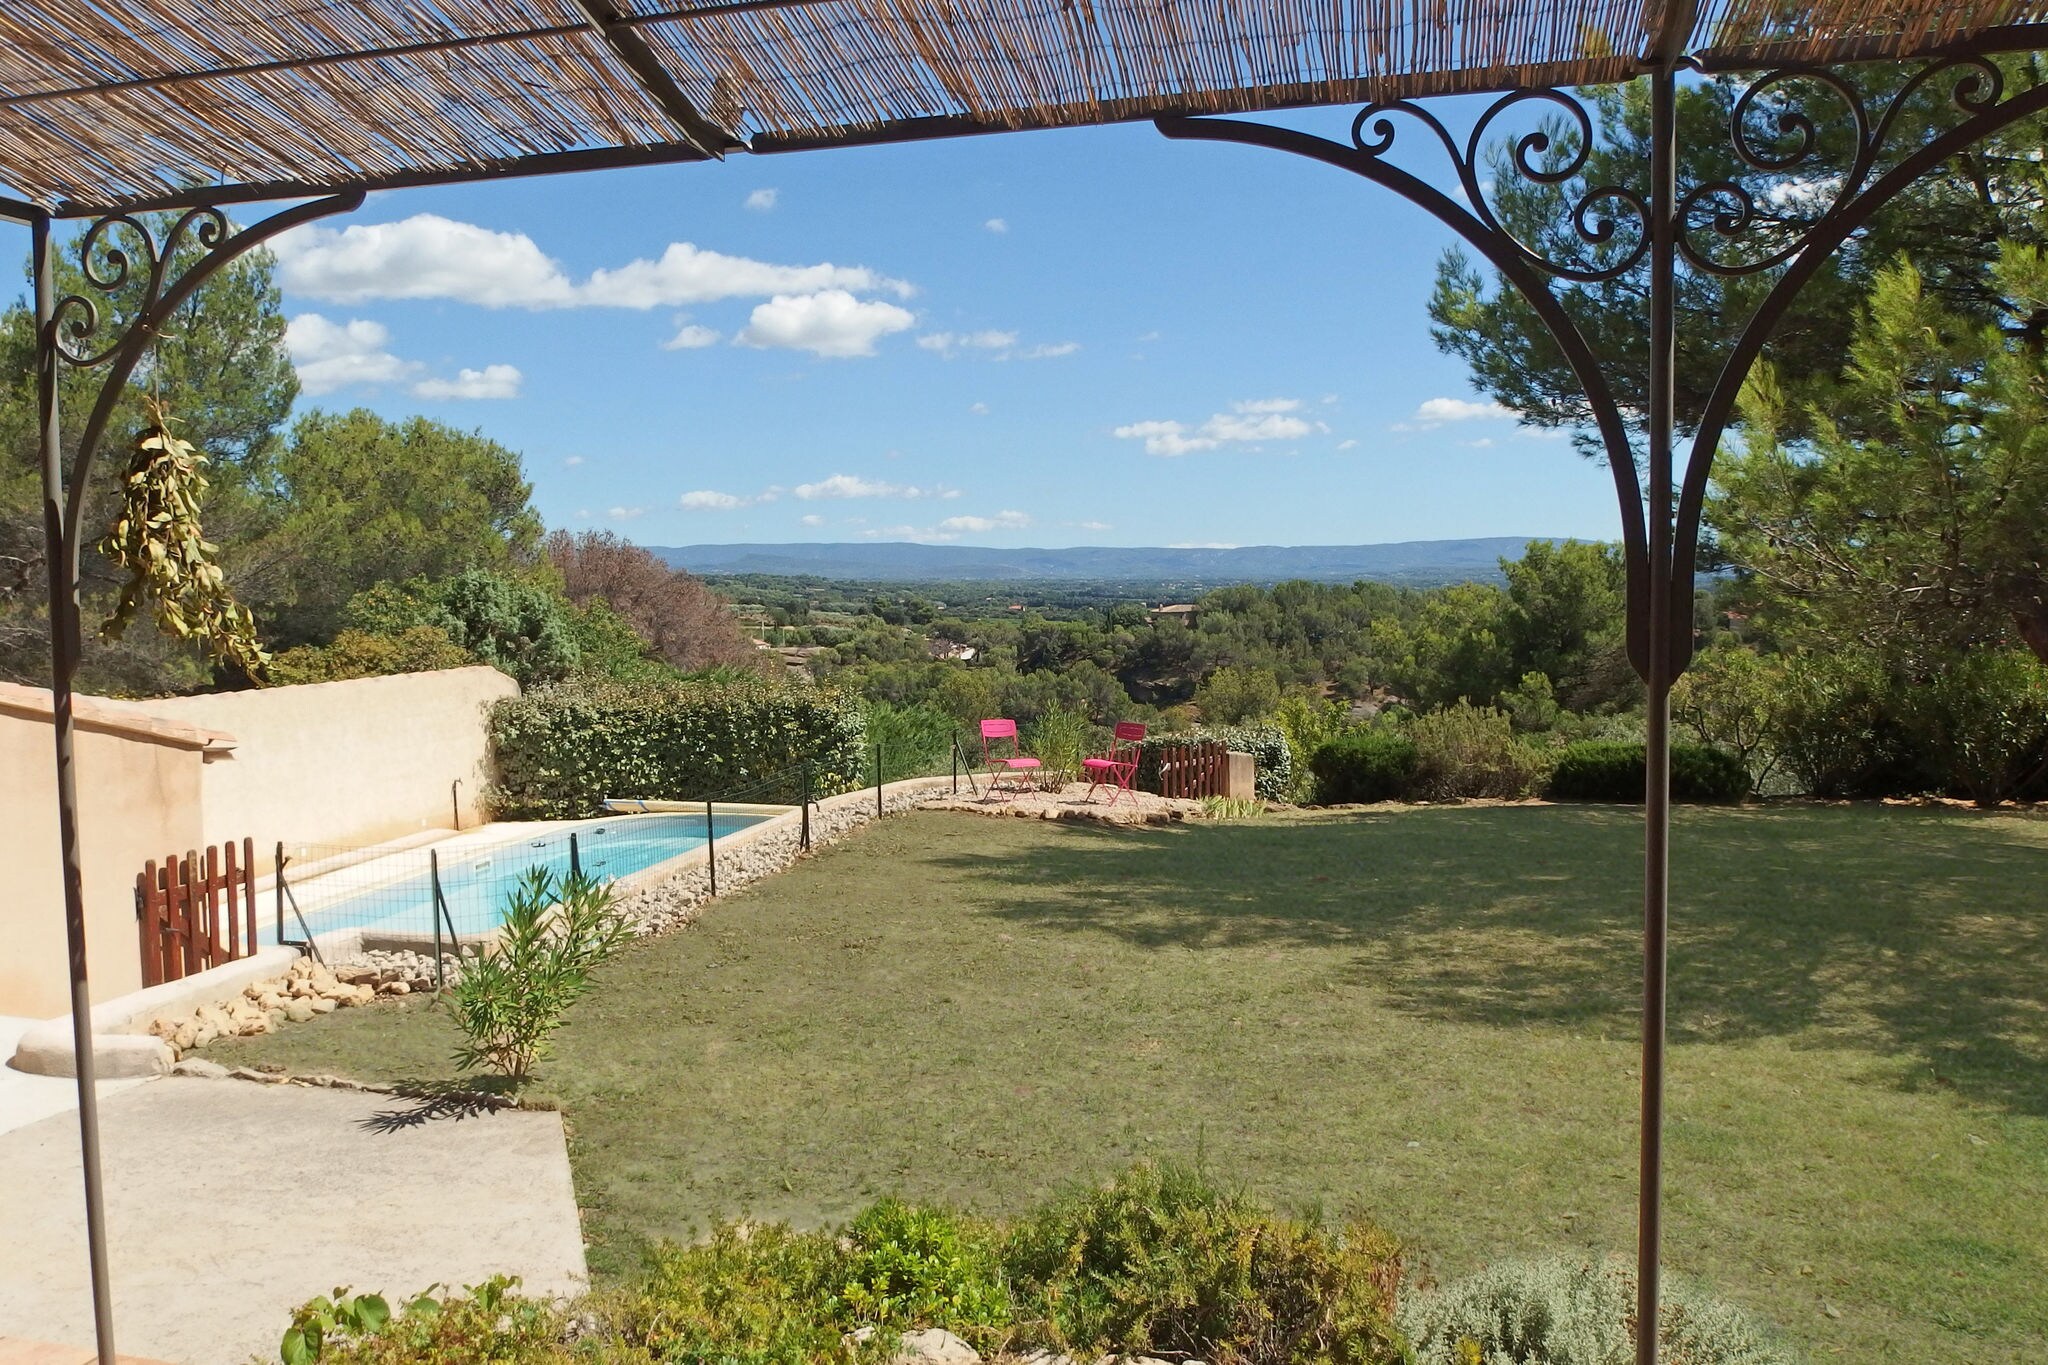 Villa moderne avec piscine privée chauffée près du Mont Ventoux.